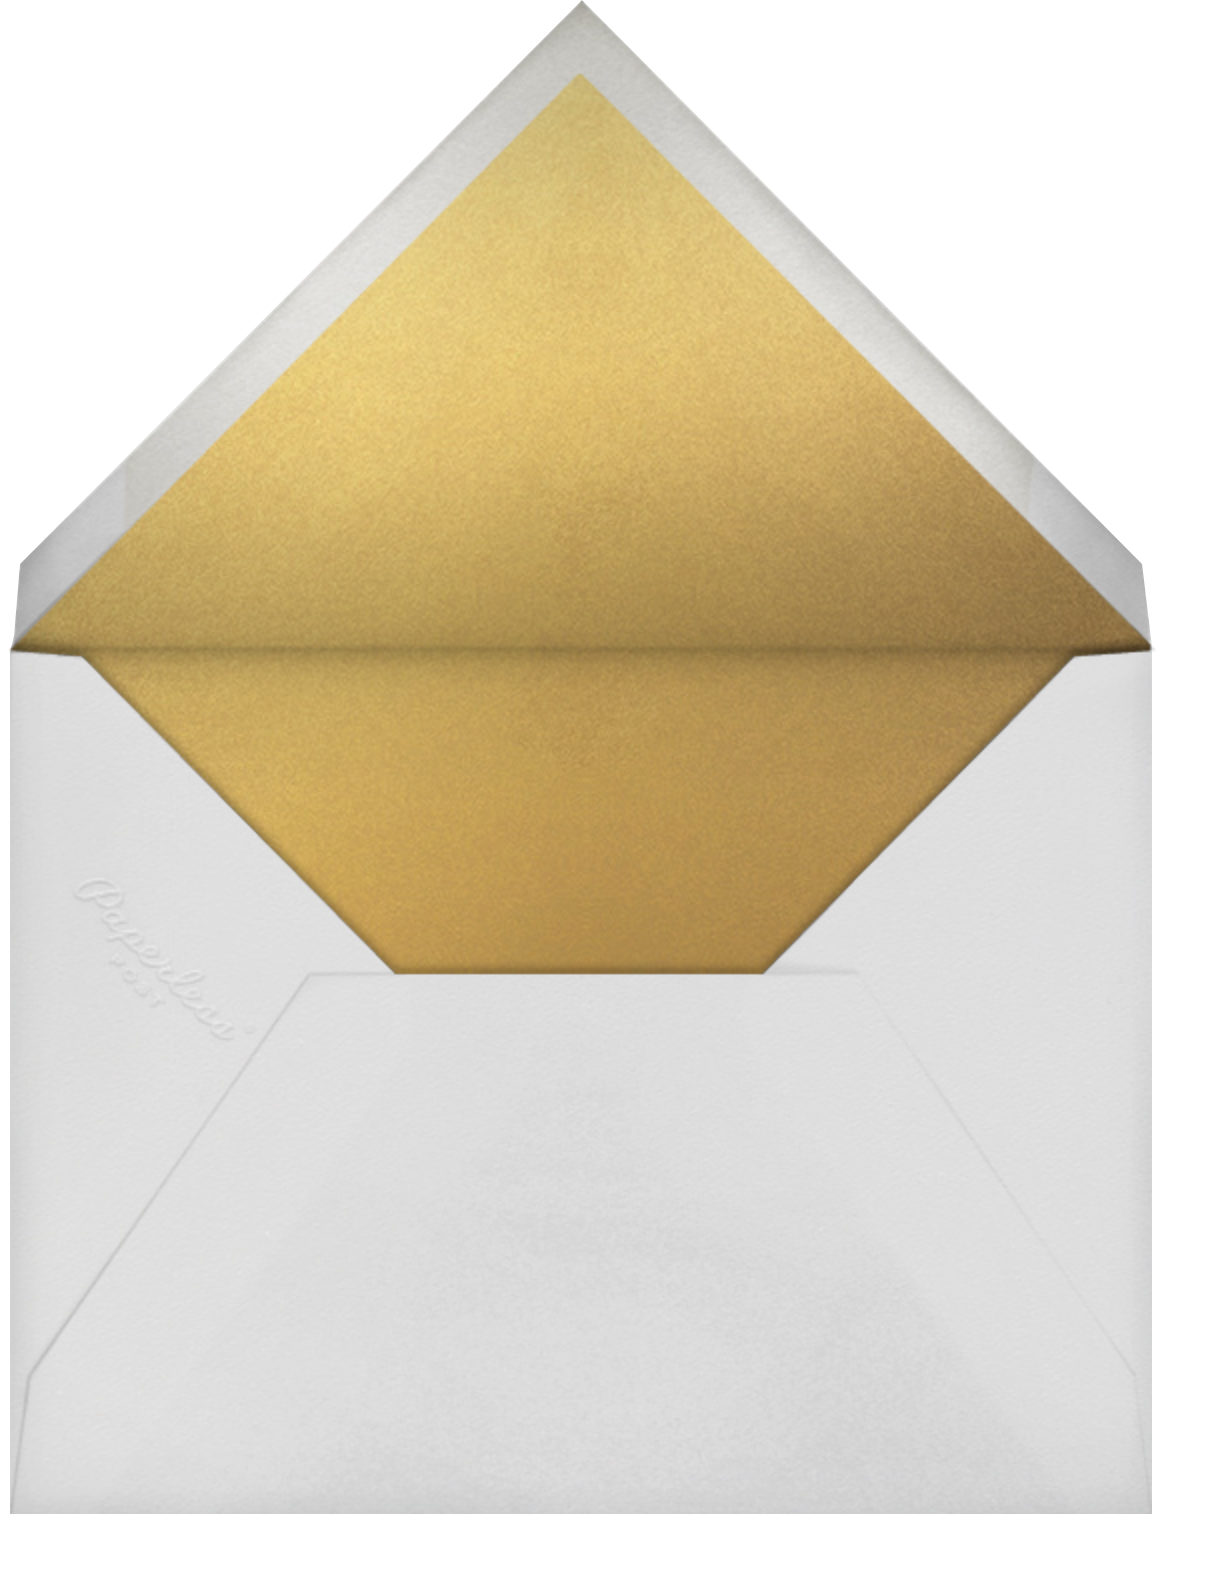 Pressed in Vellum (Invitation) - Paperless Post - Envelope